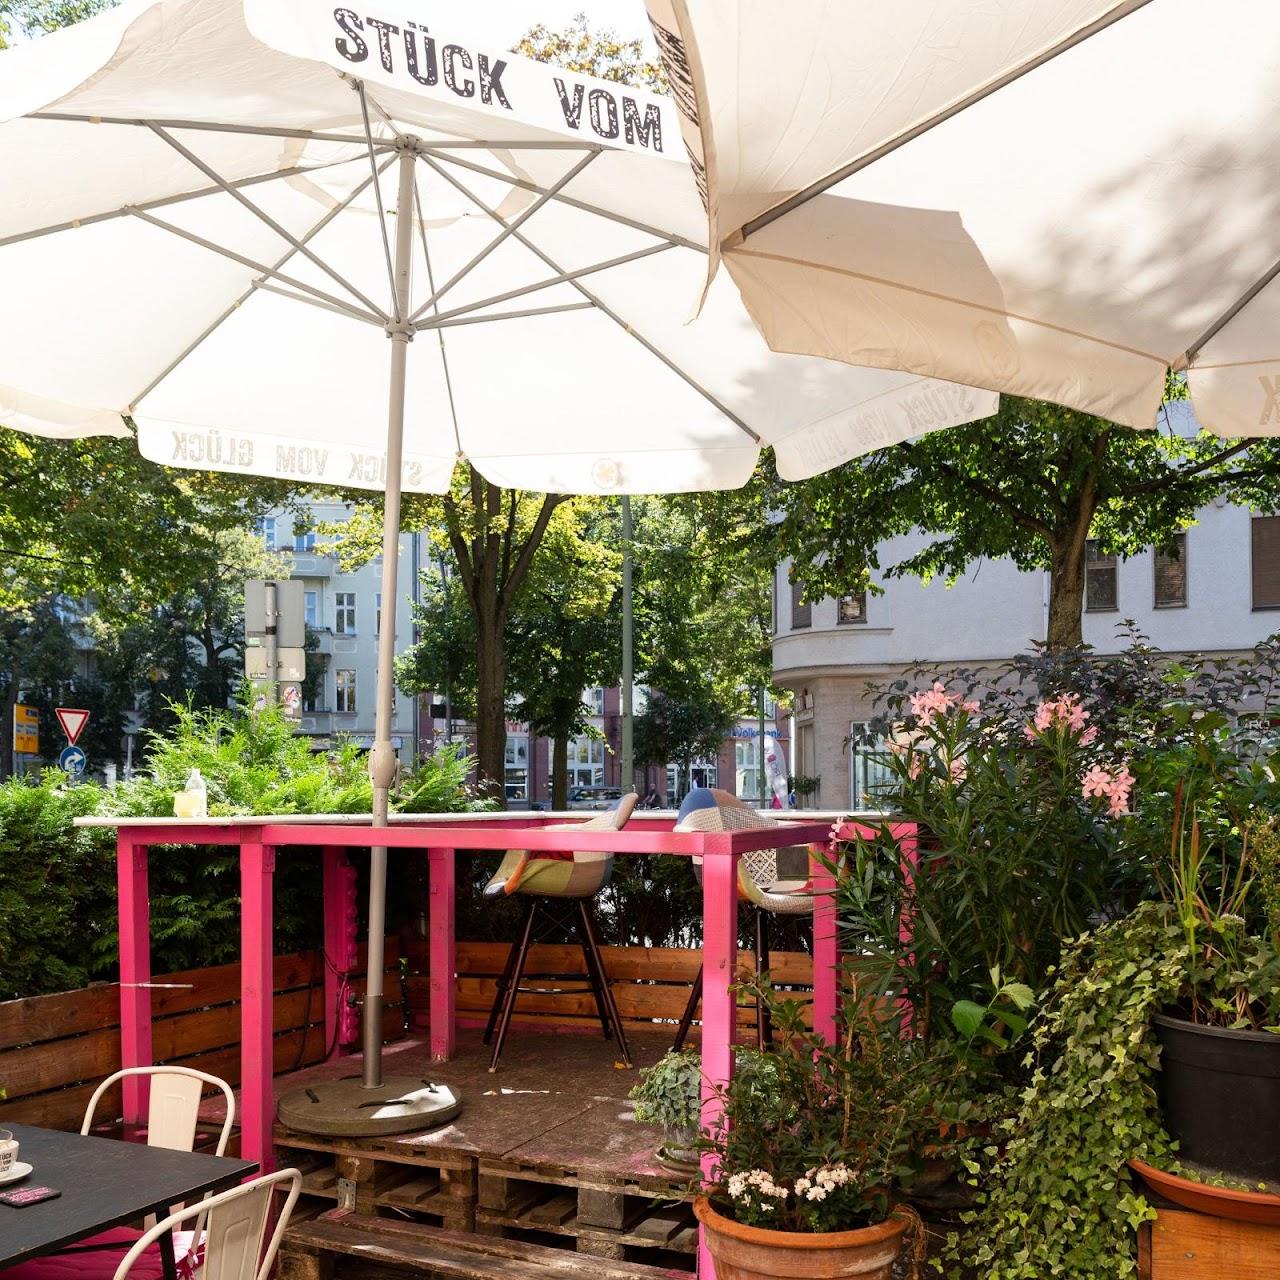 Restaurant "Stück vom Glück" in Berlin